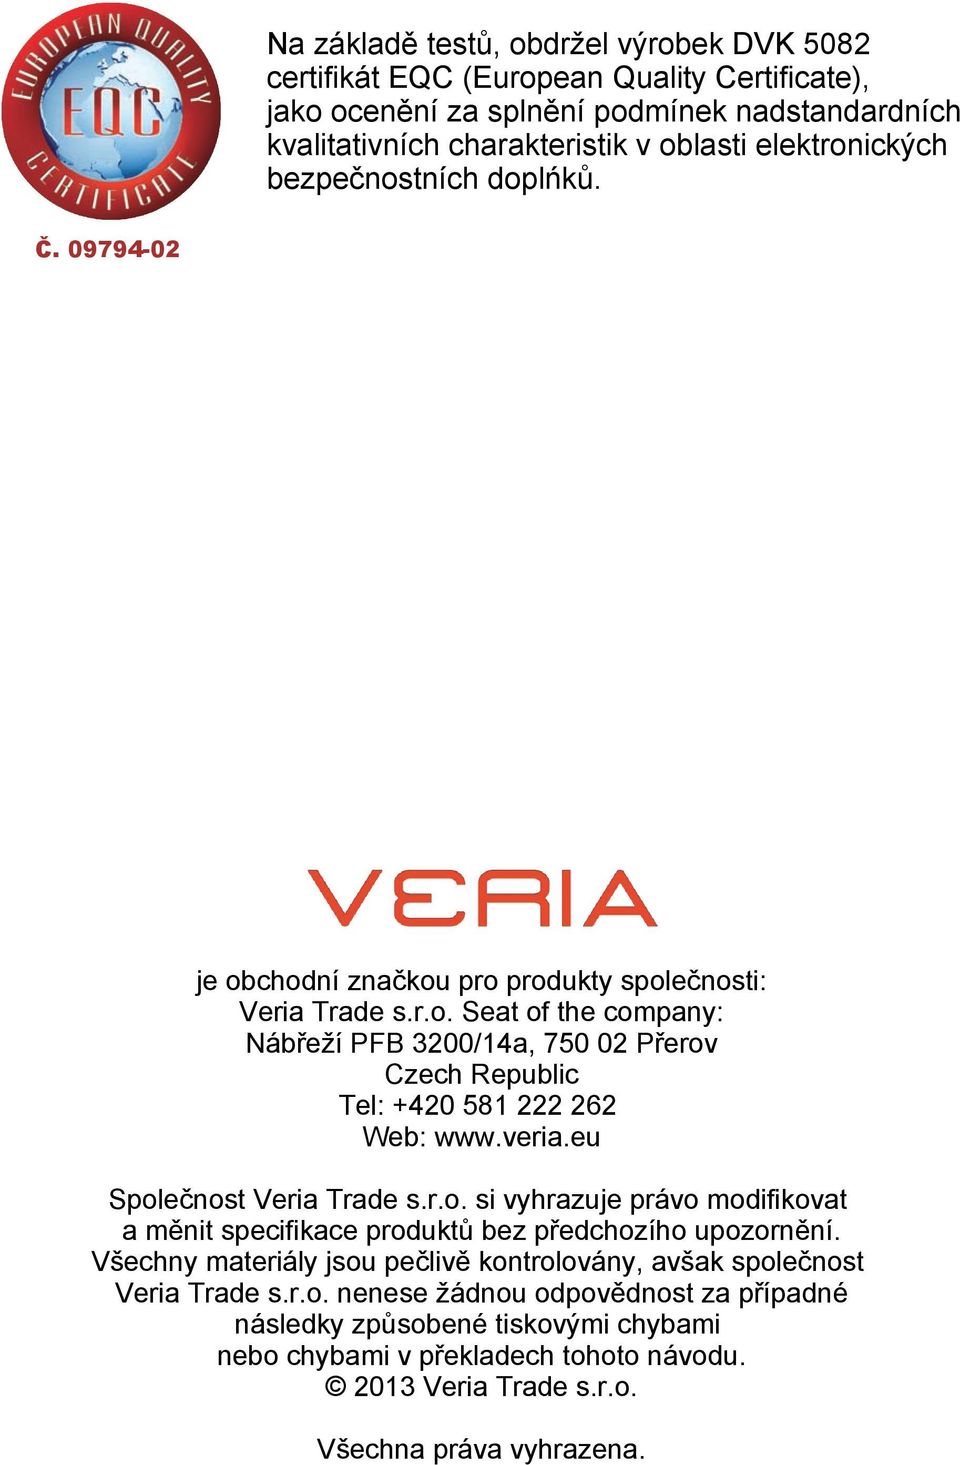 veria.eu Společnost Veria Trade s.r.o. si vyhrazuje právo modifikovat a měnit specifikace produktů bez předchozího upozornění.